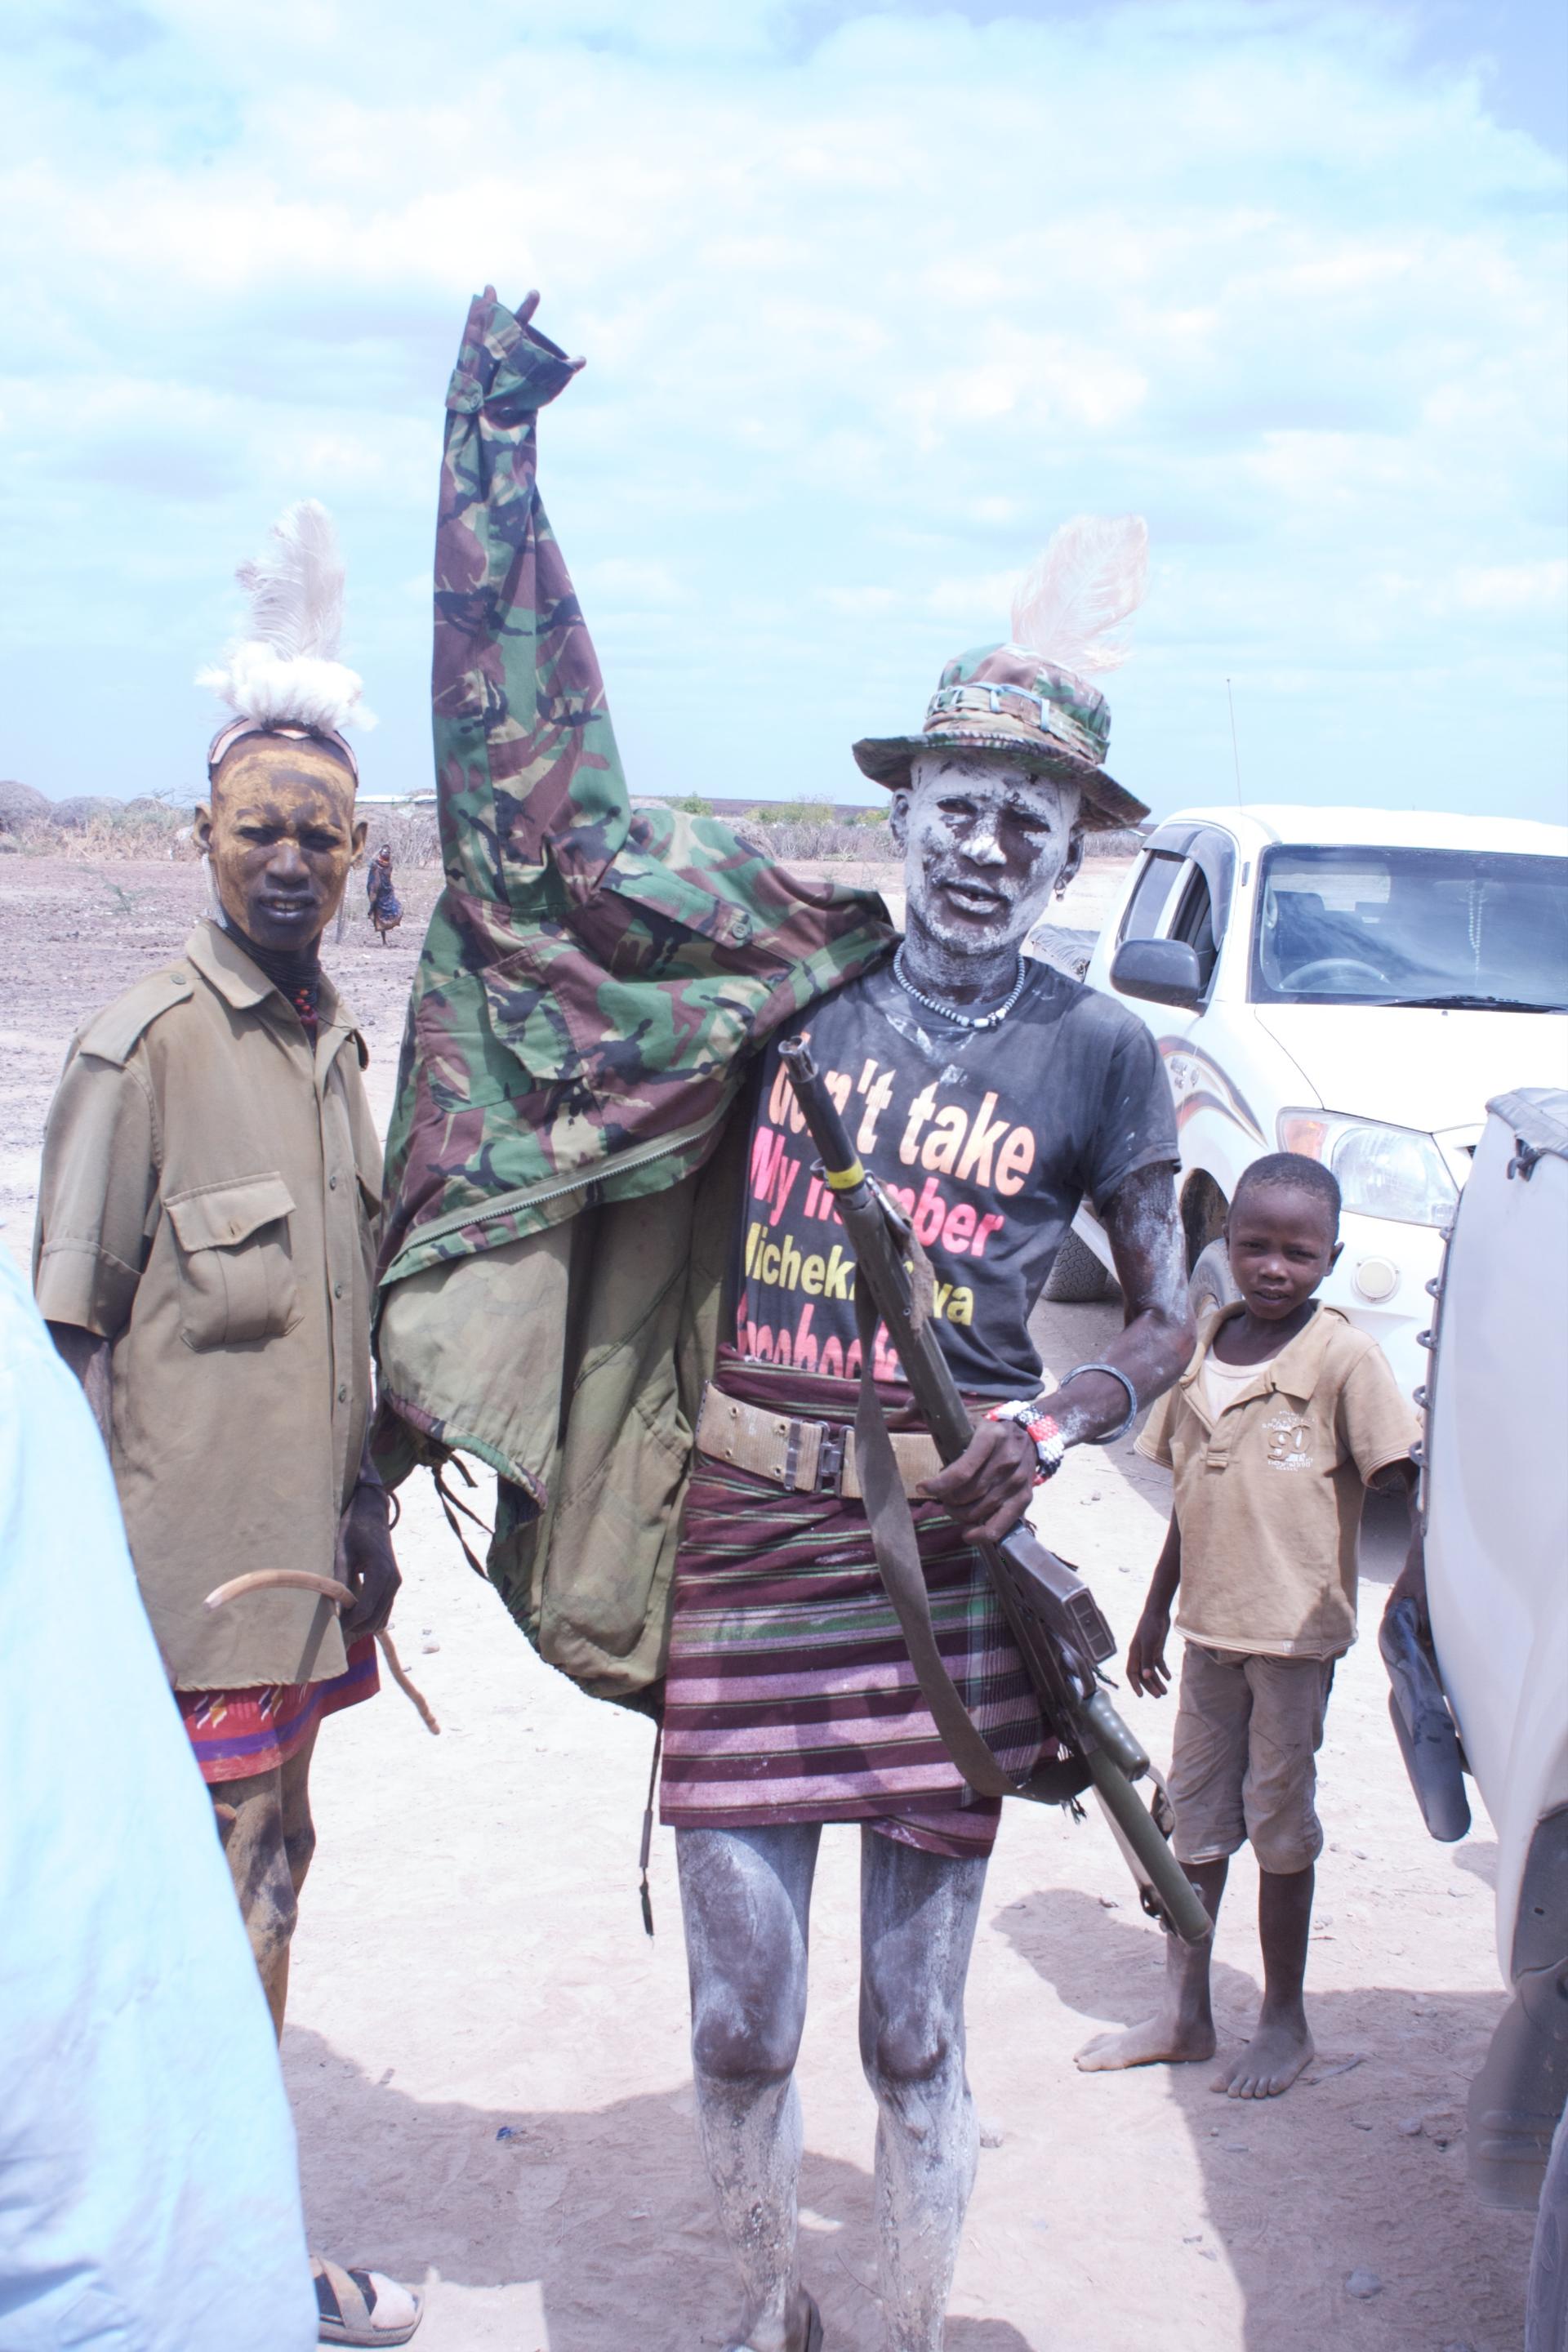 A Turkana security guard near Loblono